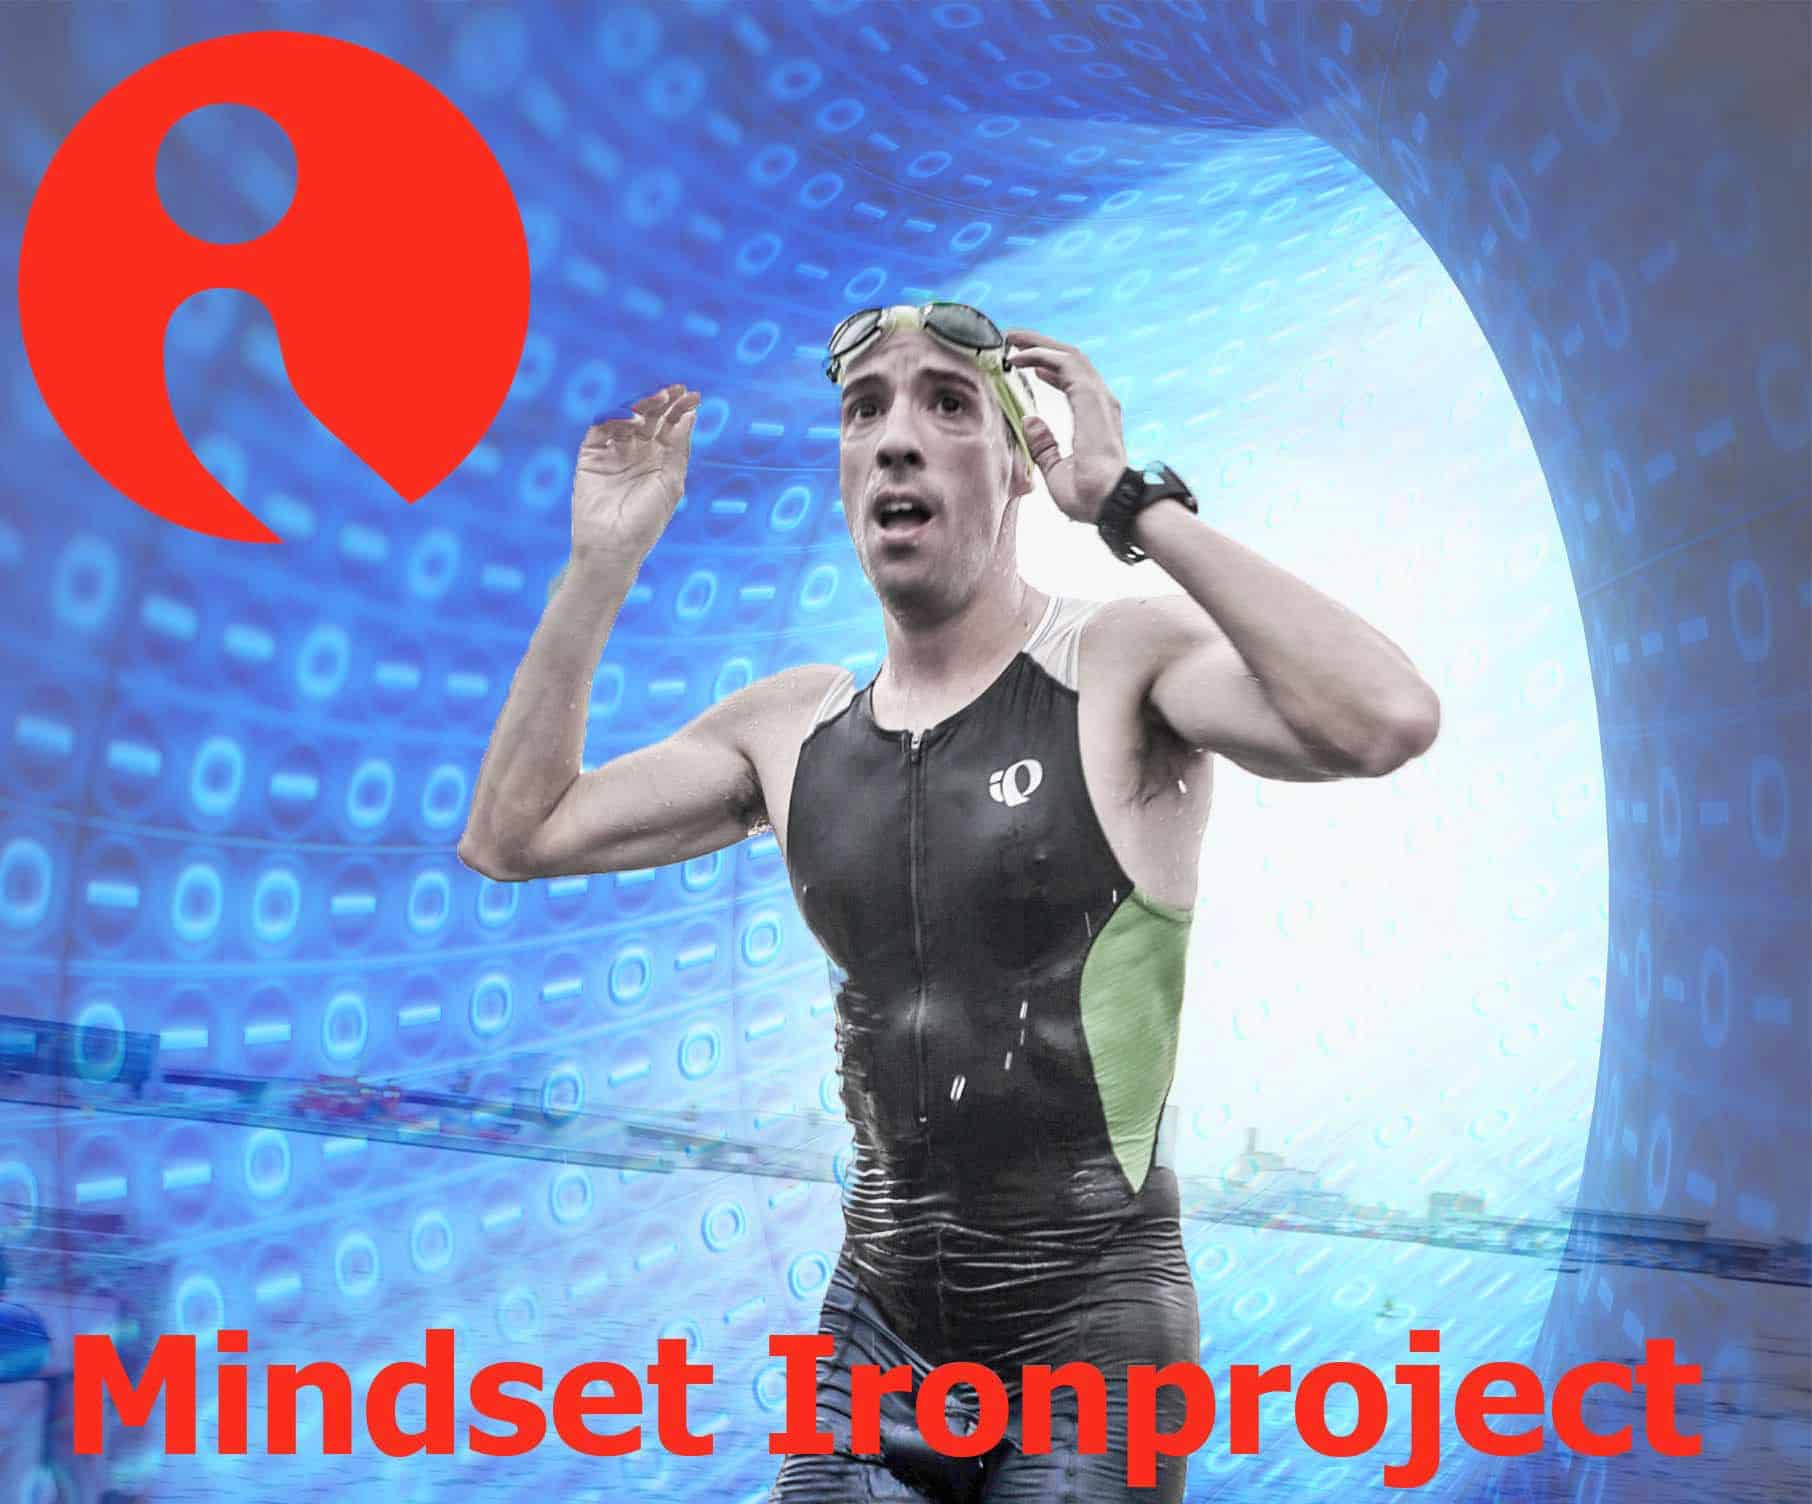 Escuela de la Memoria|[Mindset Ironproject] Mente y cuerpo al límite: Mindset Ironproject